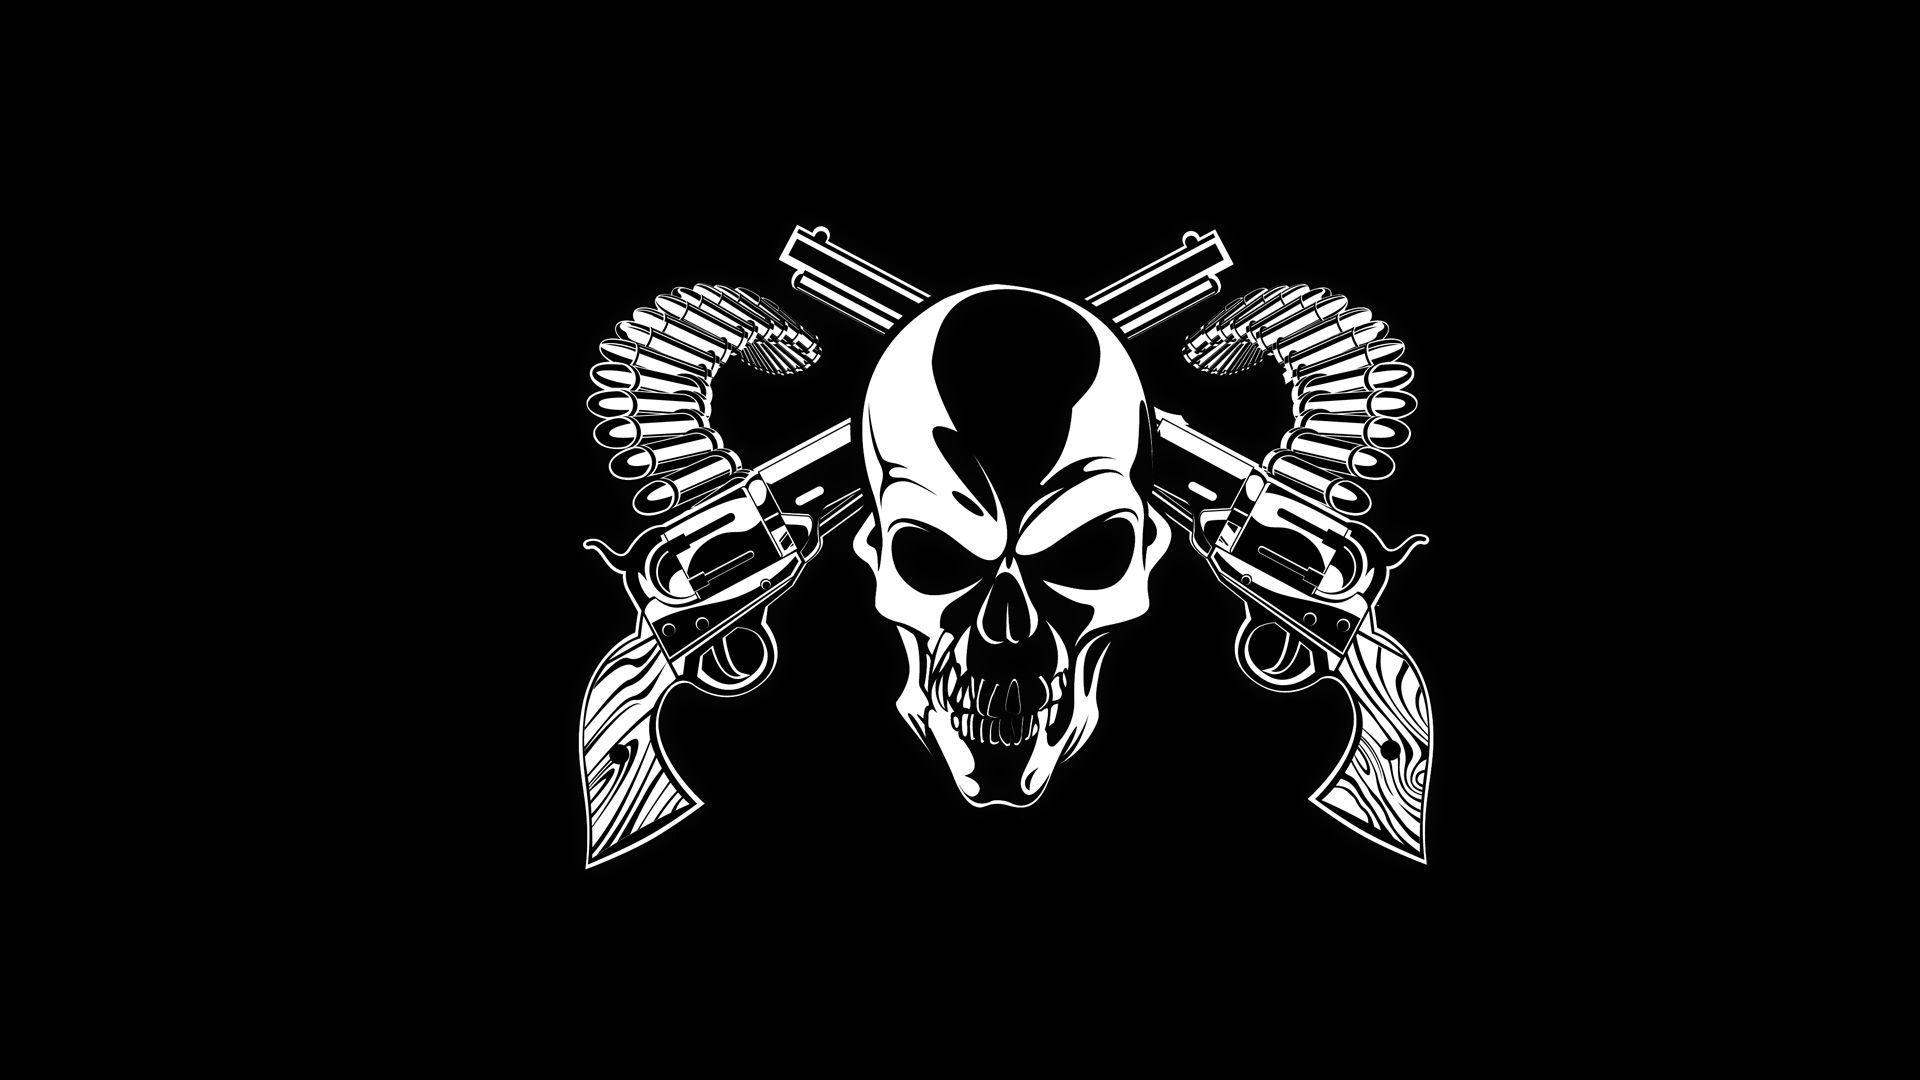 Cool Gun Logo - Skulls Guns Background Image